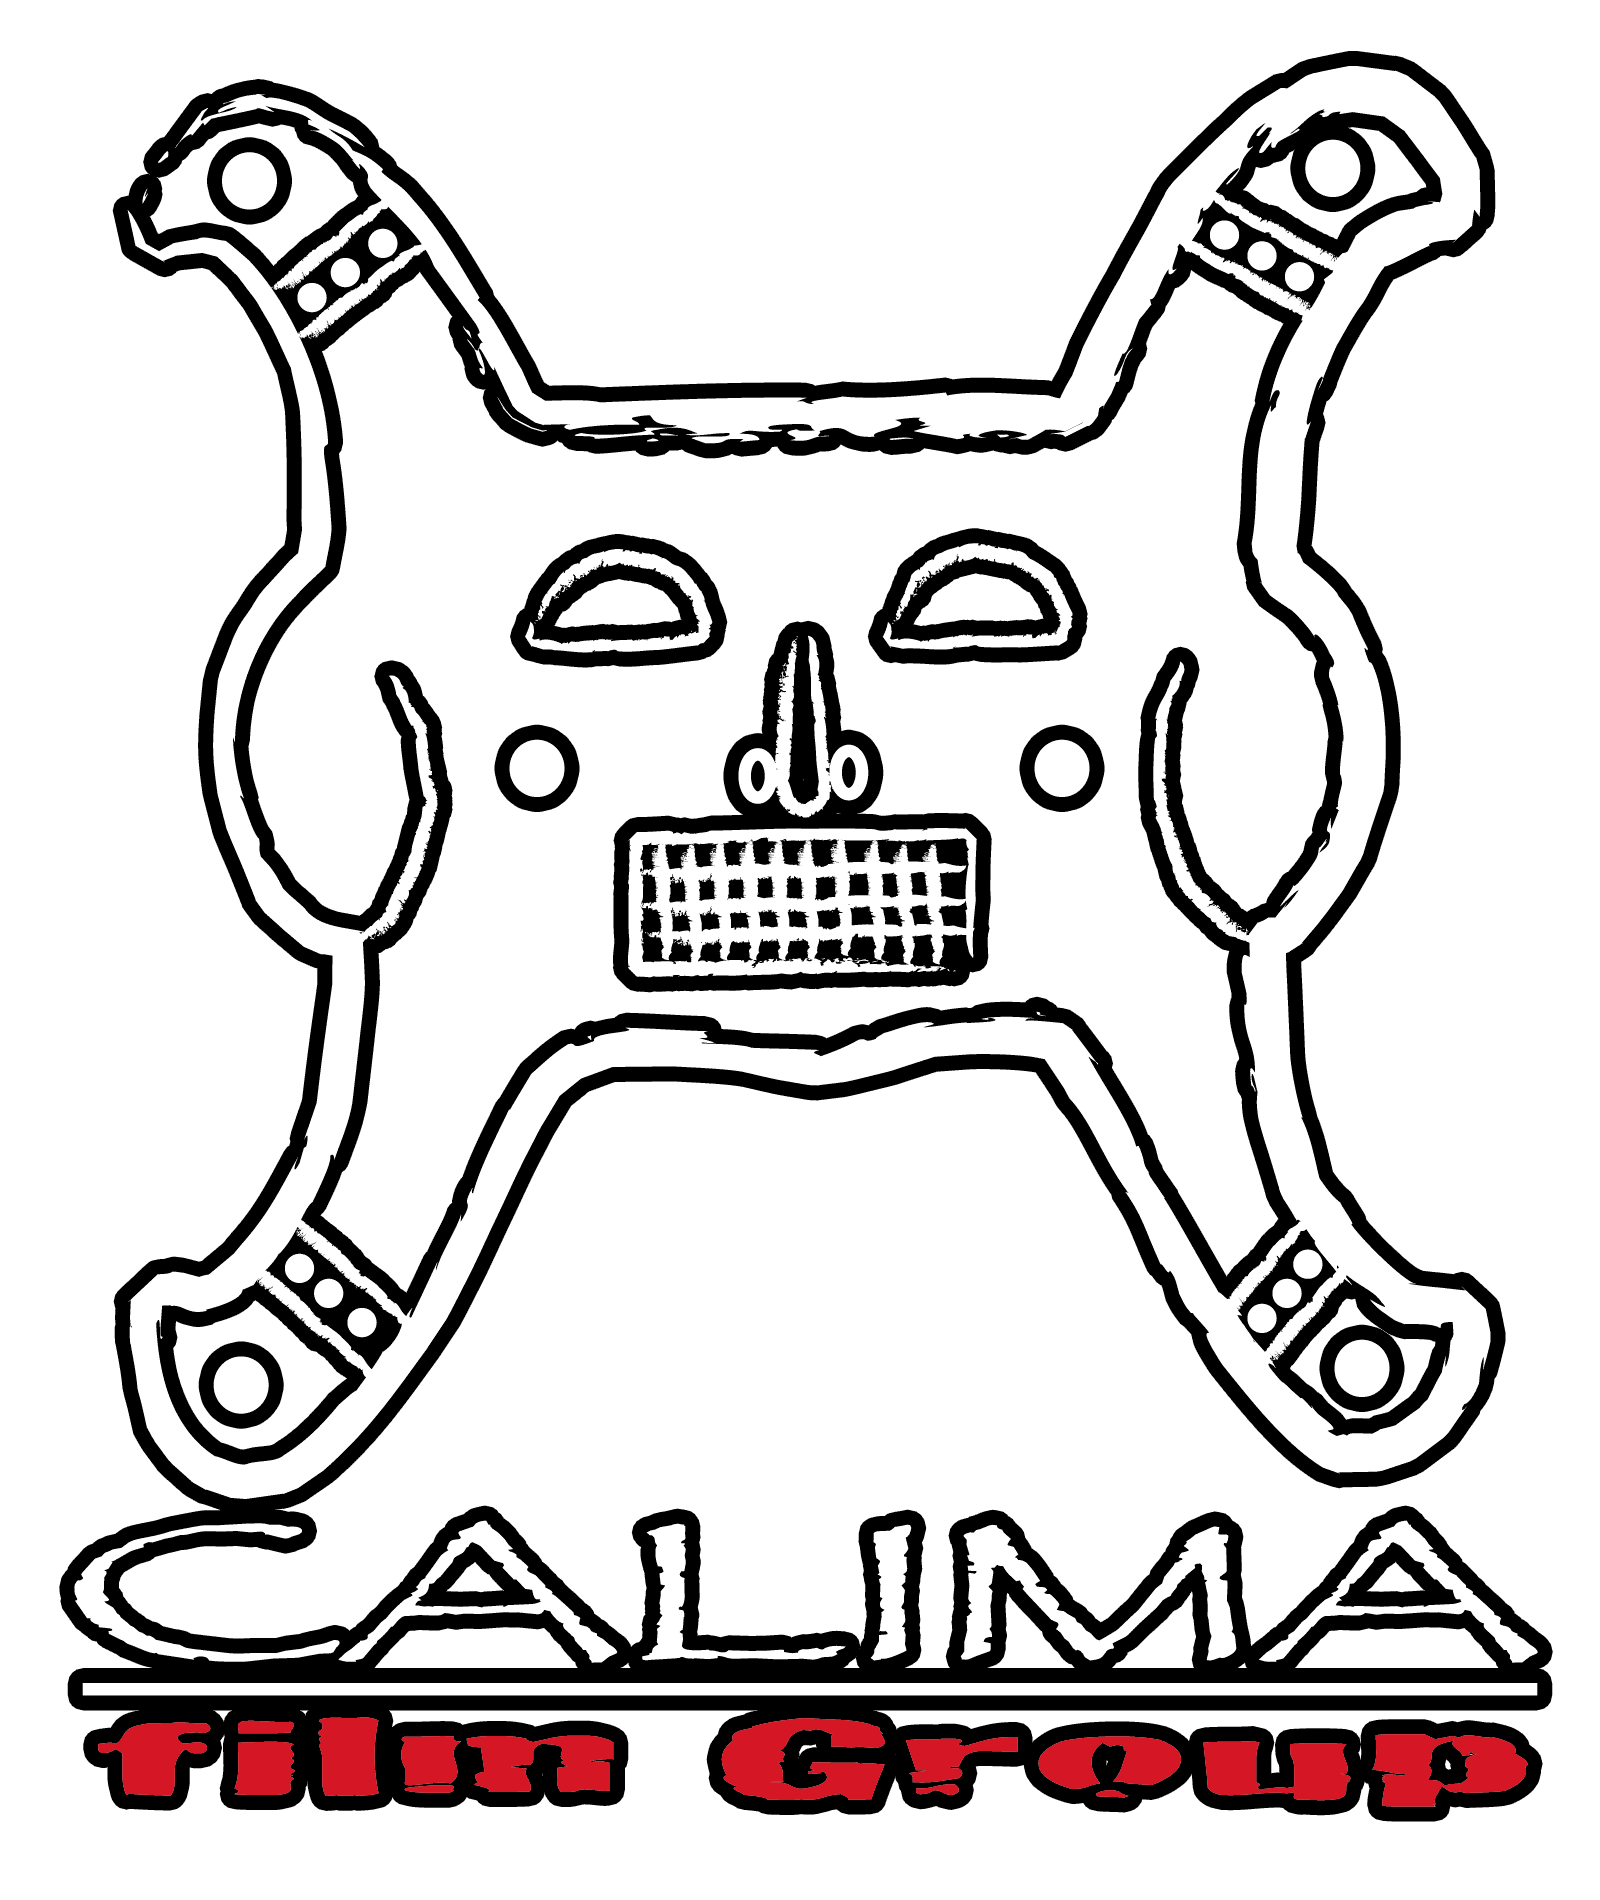 Calima Film Group Logo